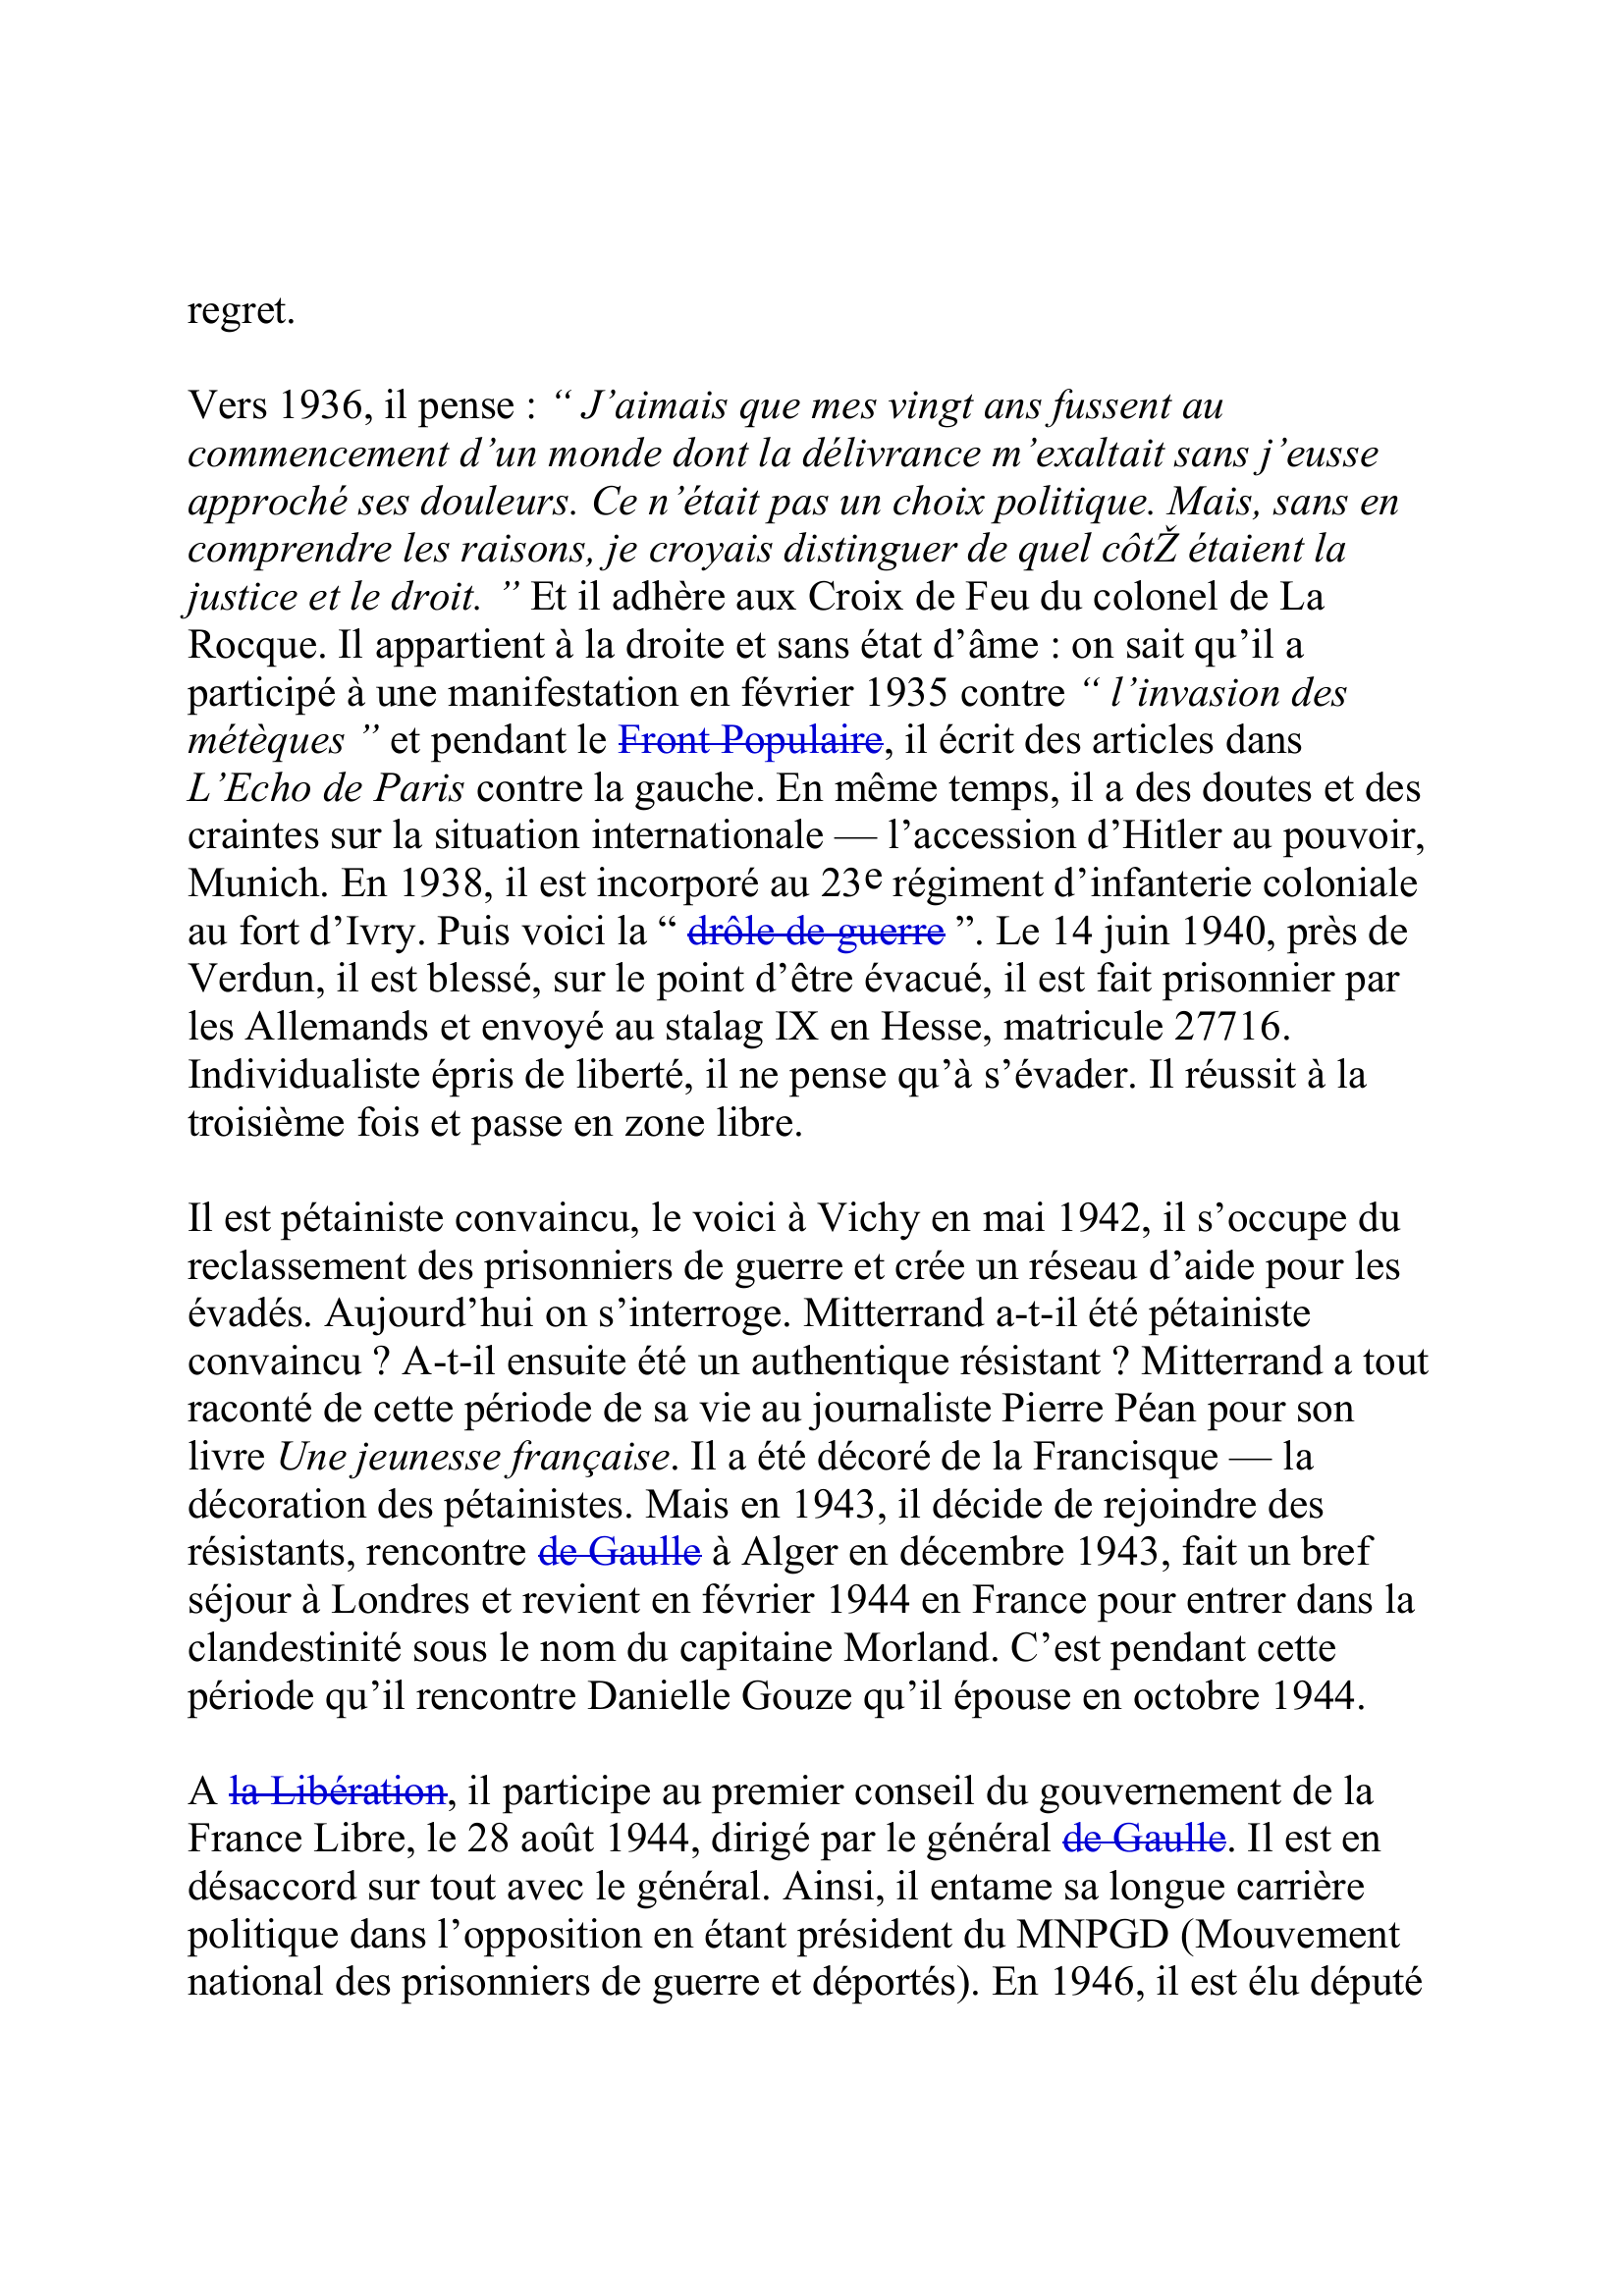 Prévisualisation du document MITTERRAND, François
(26 octobre 1916-8 janvier 1996)
Président de la République (1981-1995)
" Je ne suis pas né à gauche, encore moins socialiste.